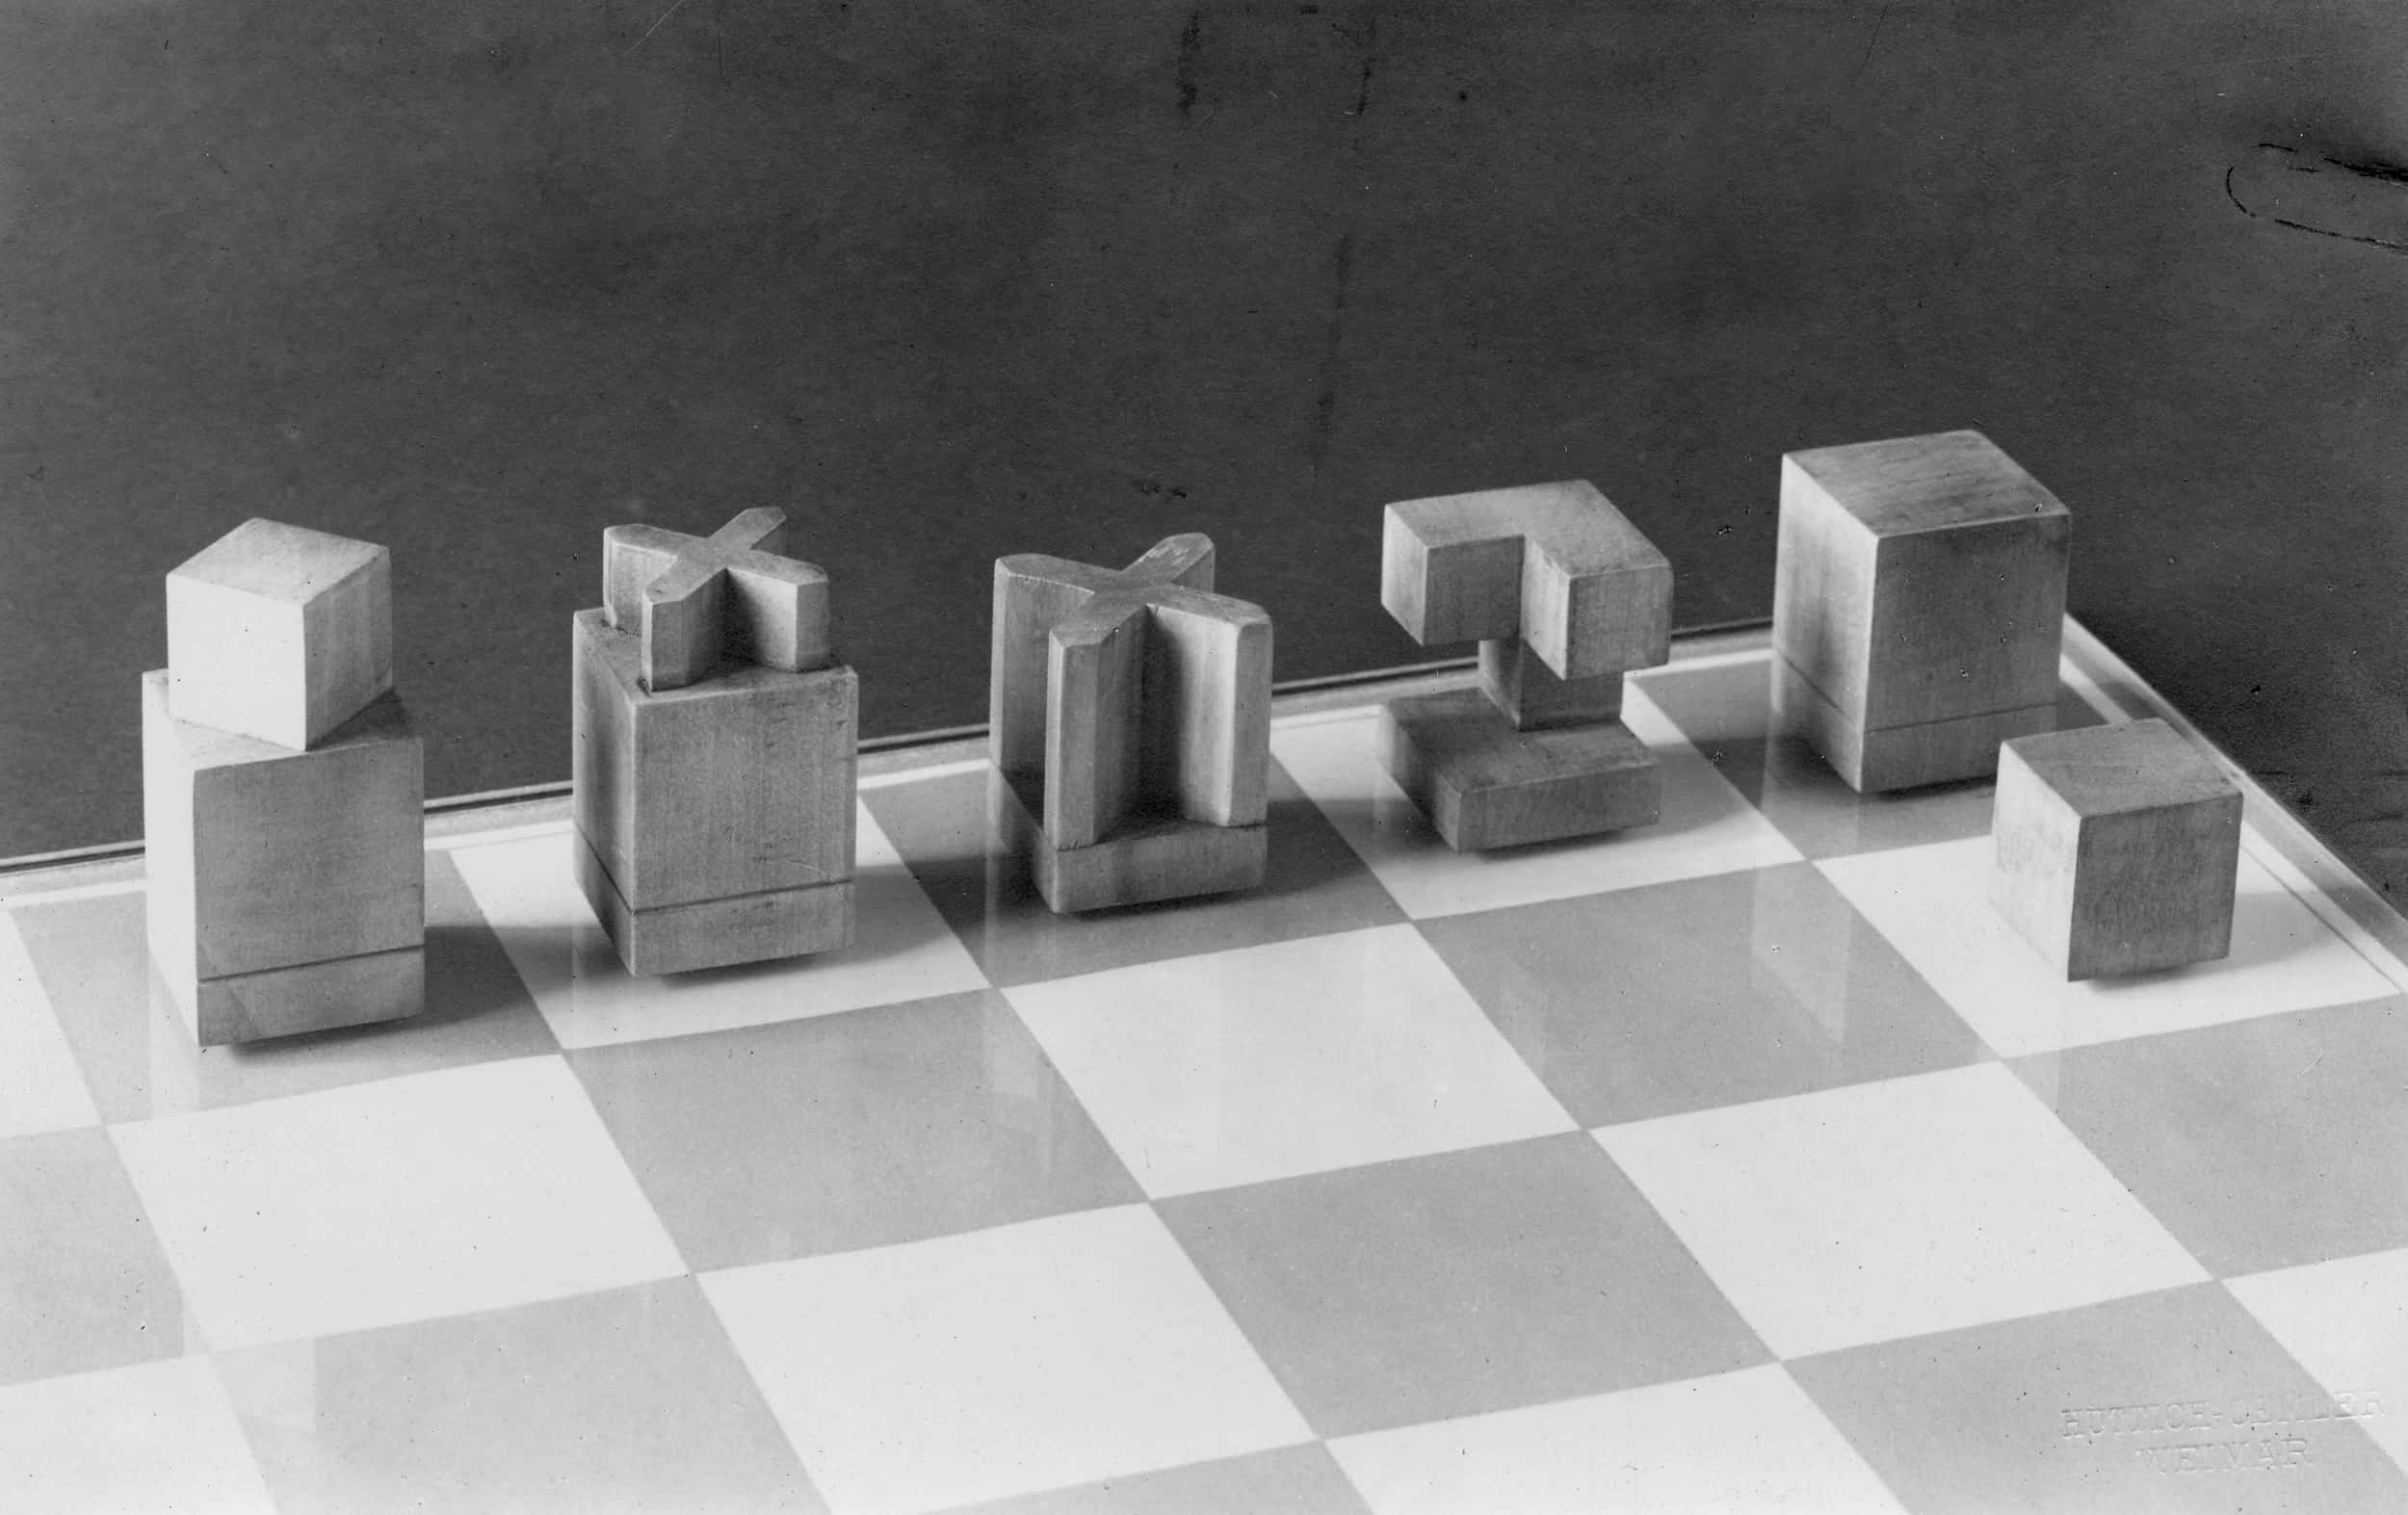 Archivbild eines Schachbretts mit geometrisch aufeinander abgestimmten Holzfiguren.